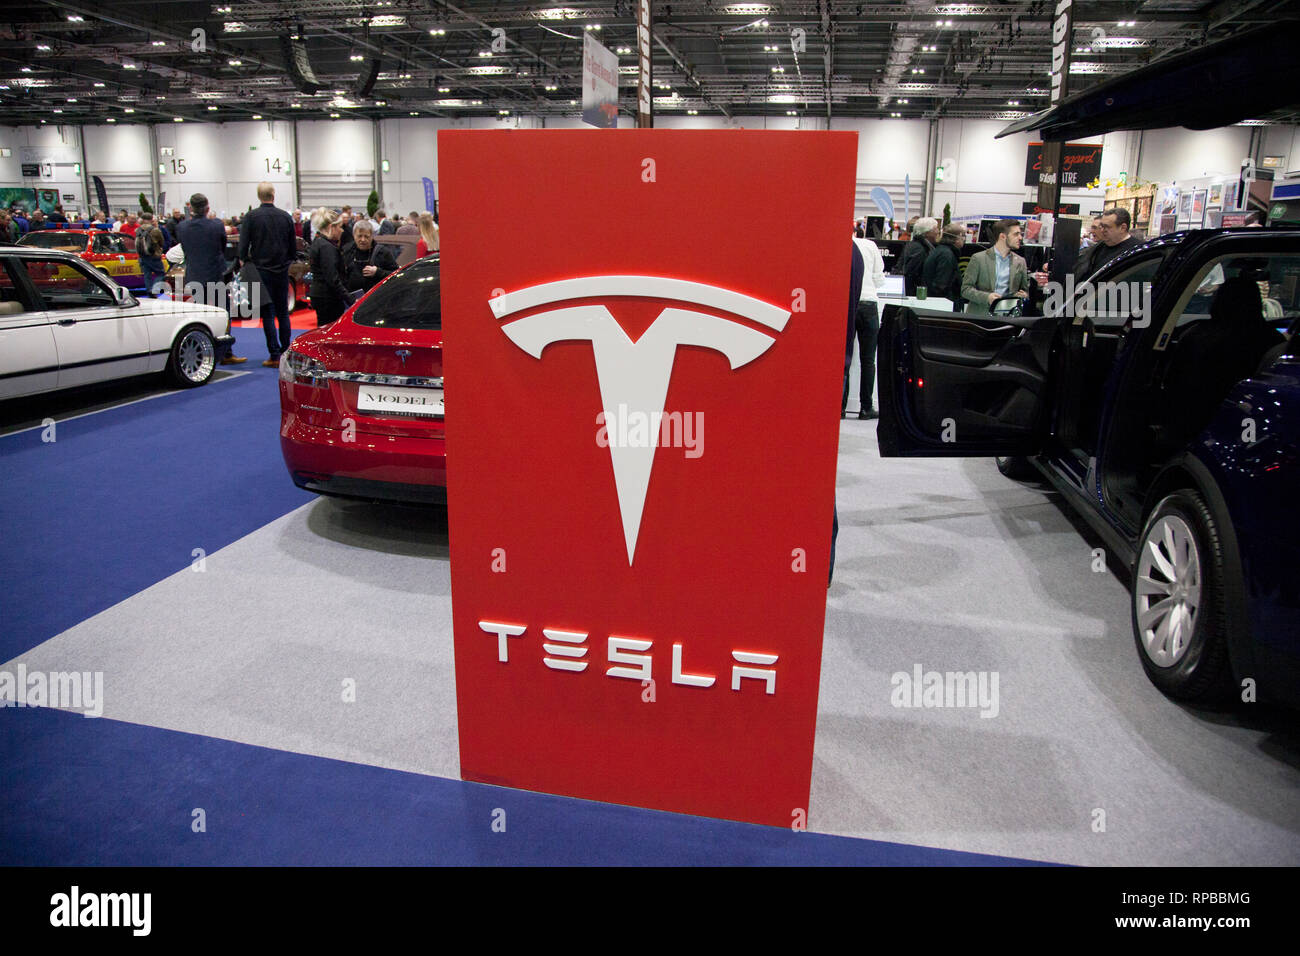 LONDON, Regno Unito - 15 febbraio 2019: Tesla marca auto in mostra presso il Classic car show Foto Stock